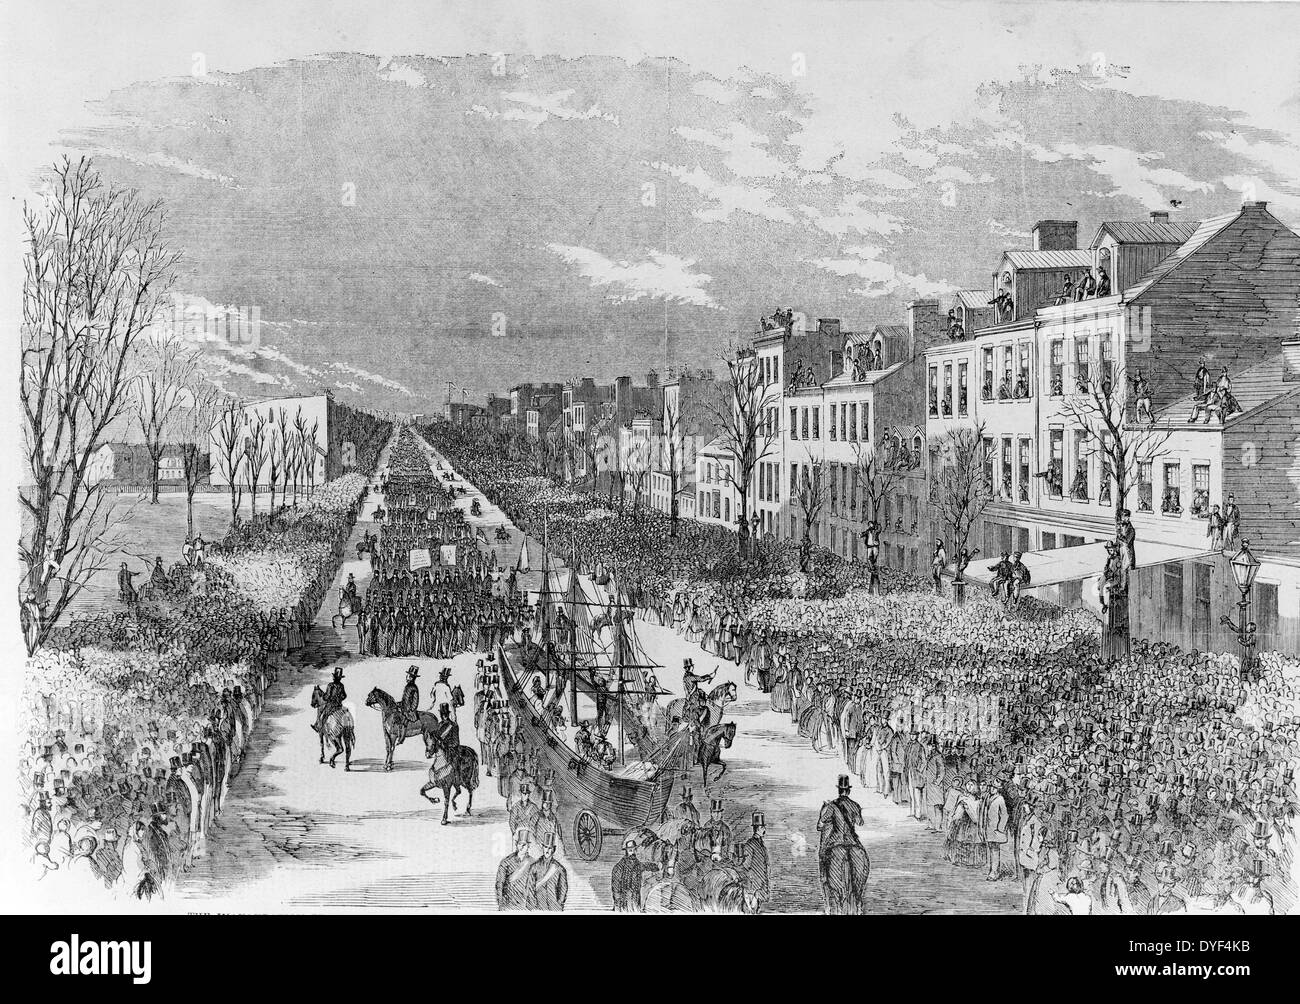 Holzstich von der Einweihung-Prozession zu Ehren von Präsident James Buchanan 1857. Stockfoto